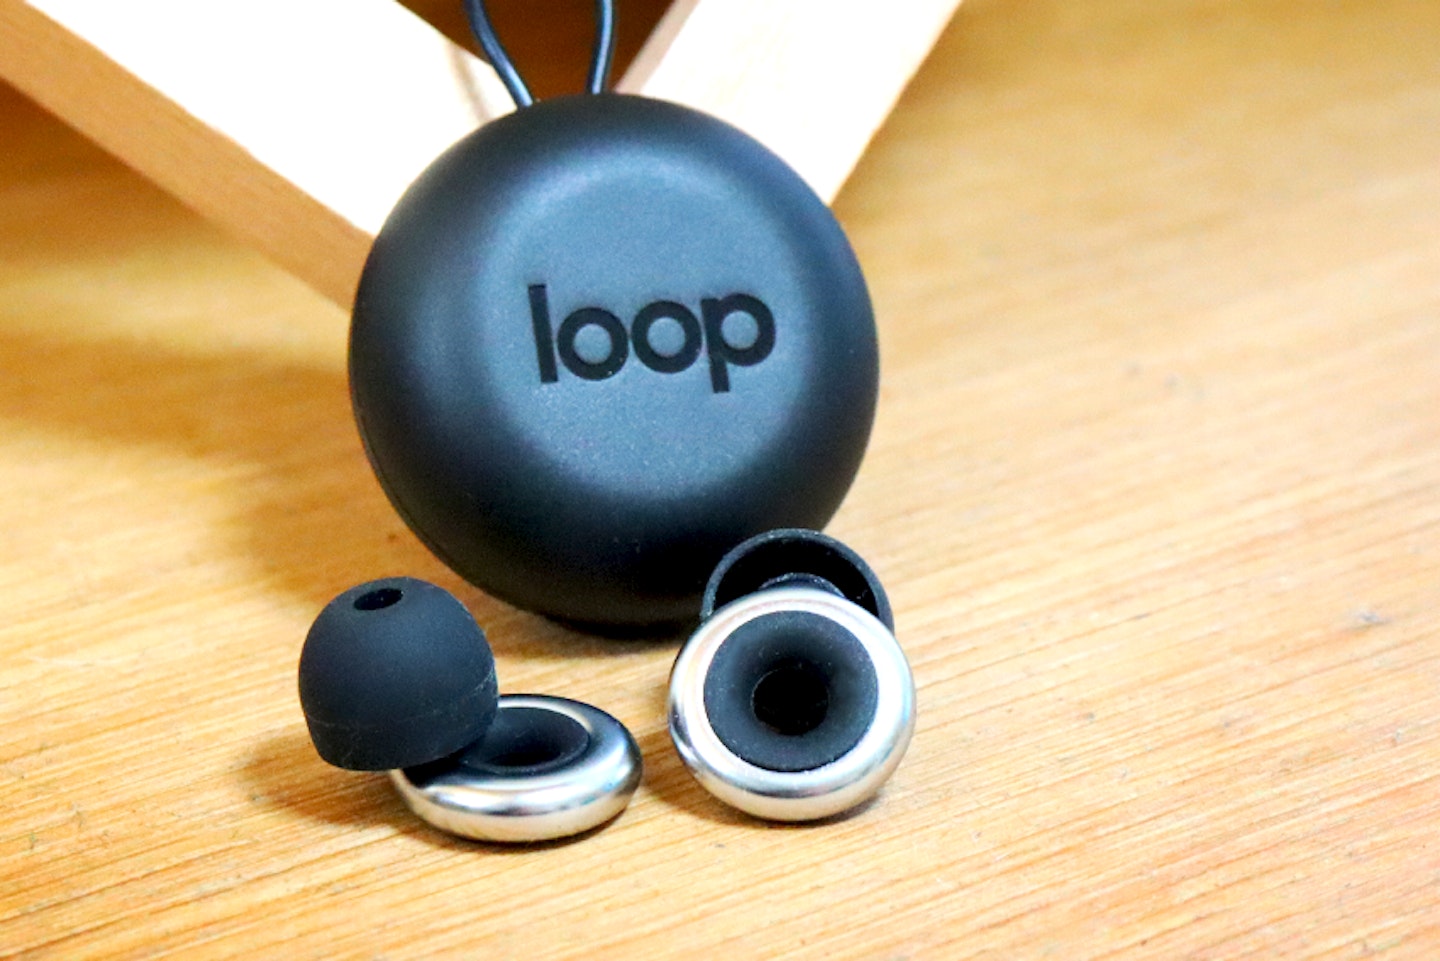 Loop Quiet and Experience Earplugs, Gadget Reviews